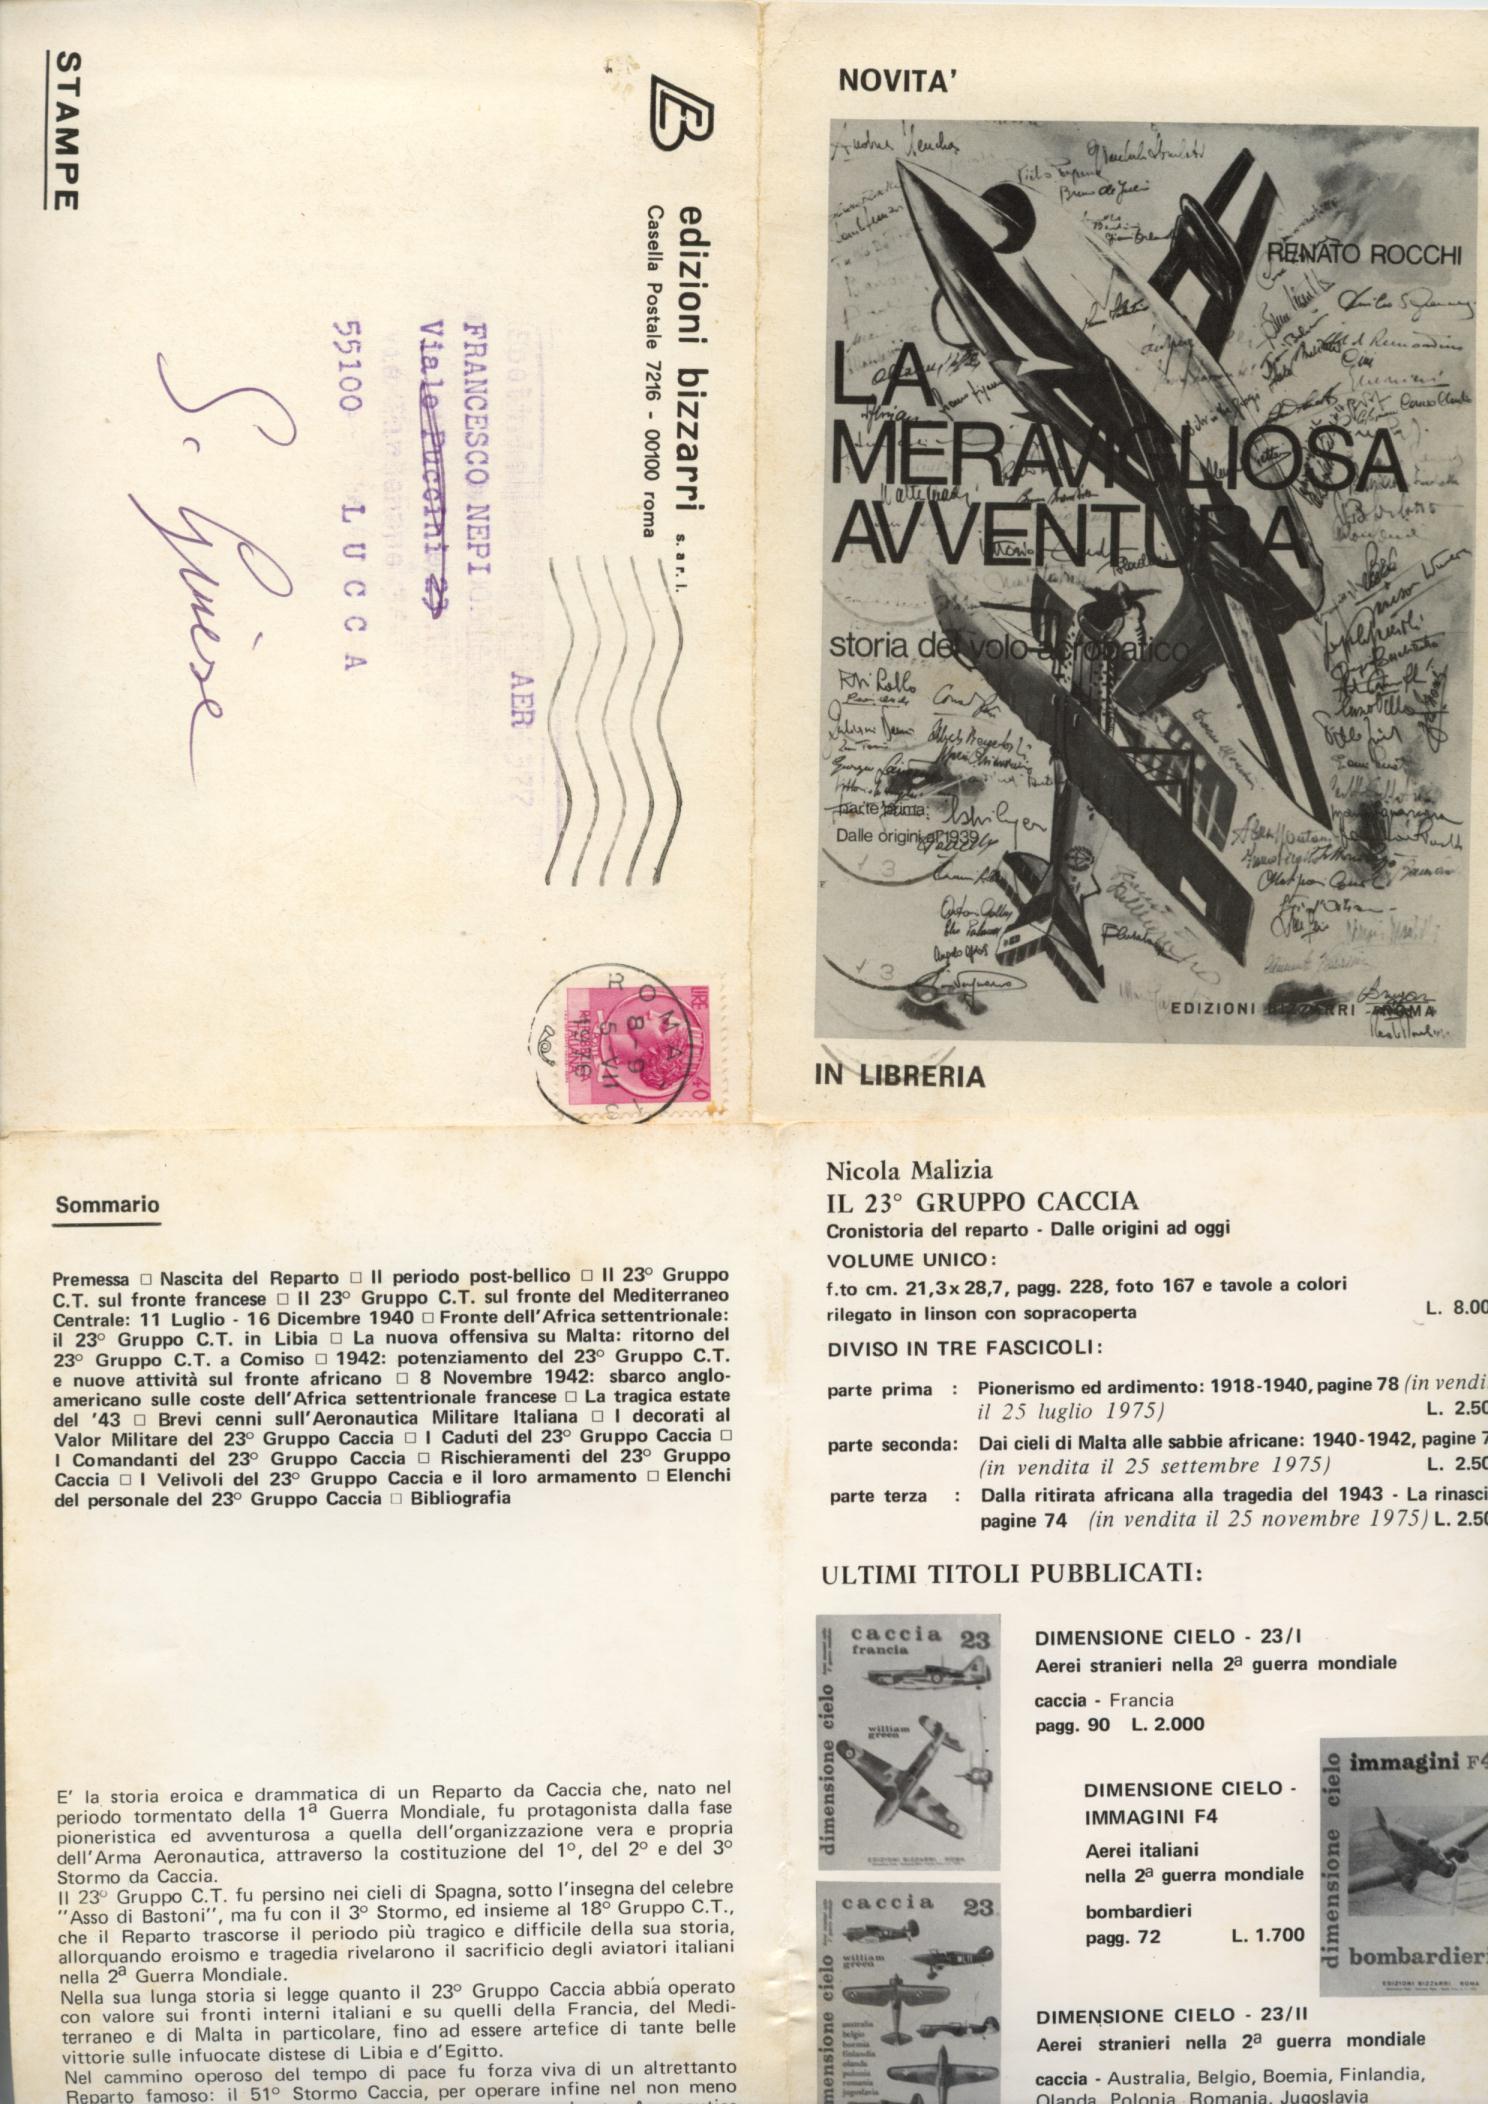 18950 - 3 stampe con francob 1976 contenenti la descrizione completa per l acquisto di libri